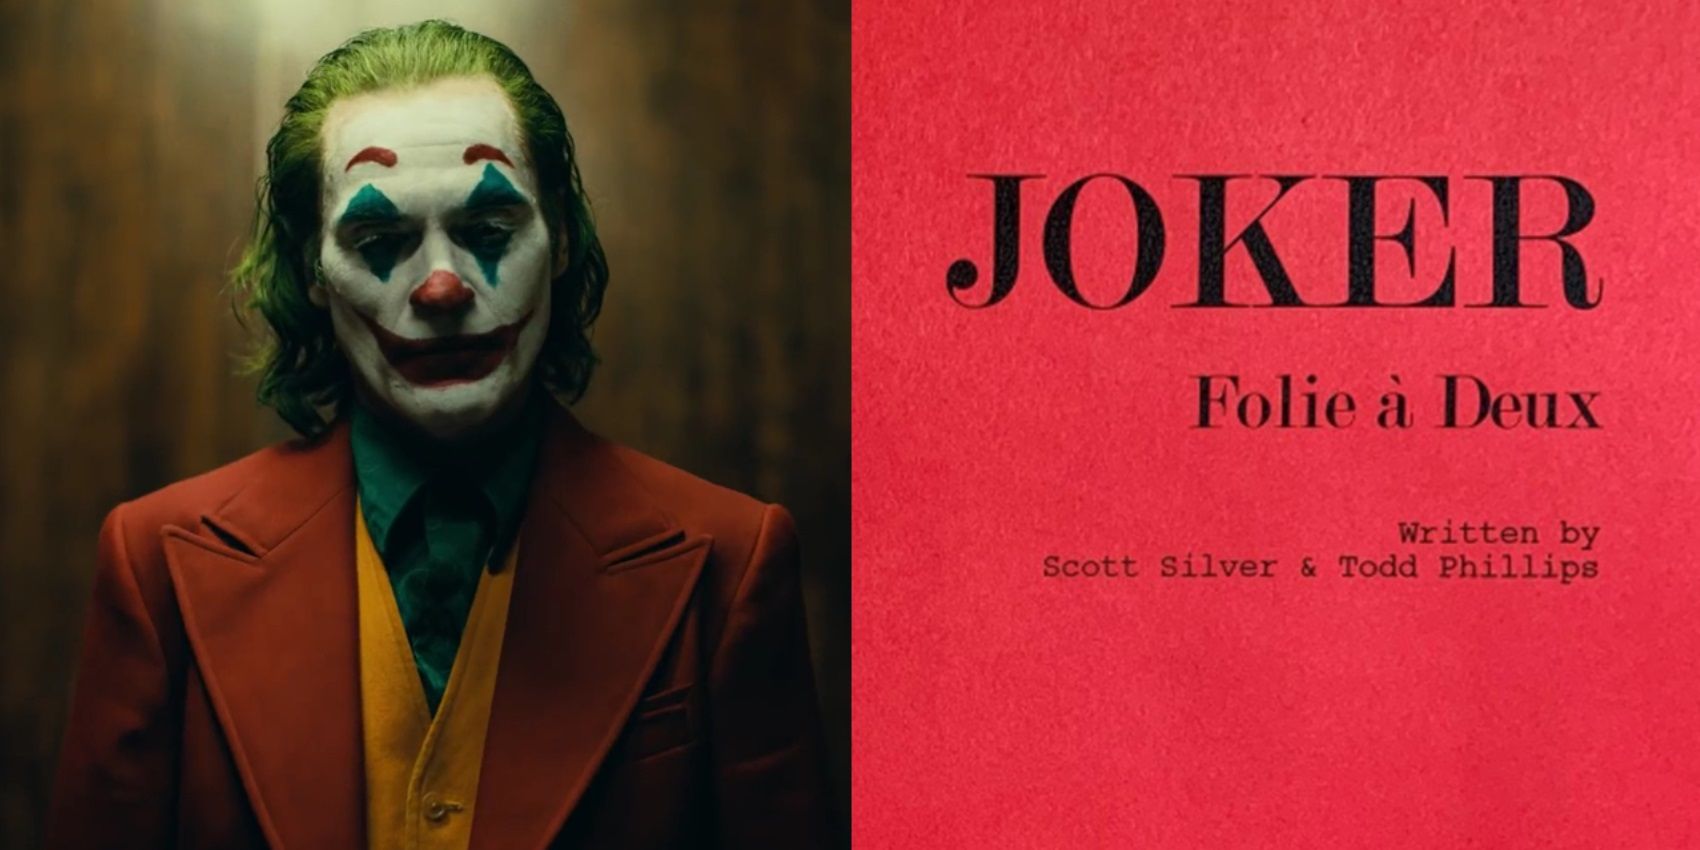 Joker 2: What Does 'Folie À Deux' Mean?